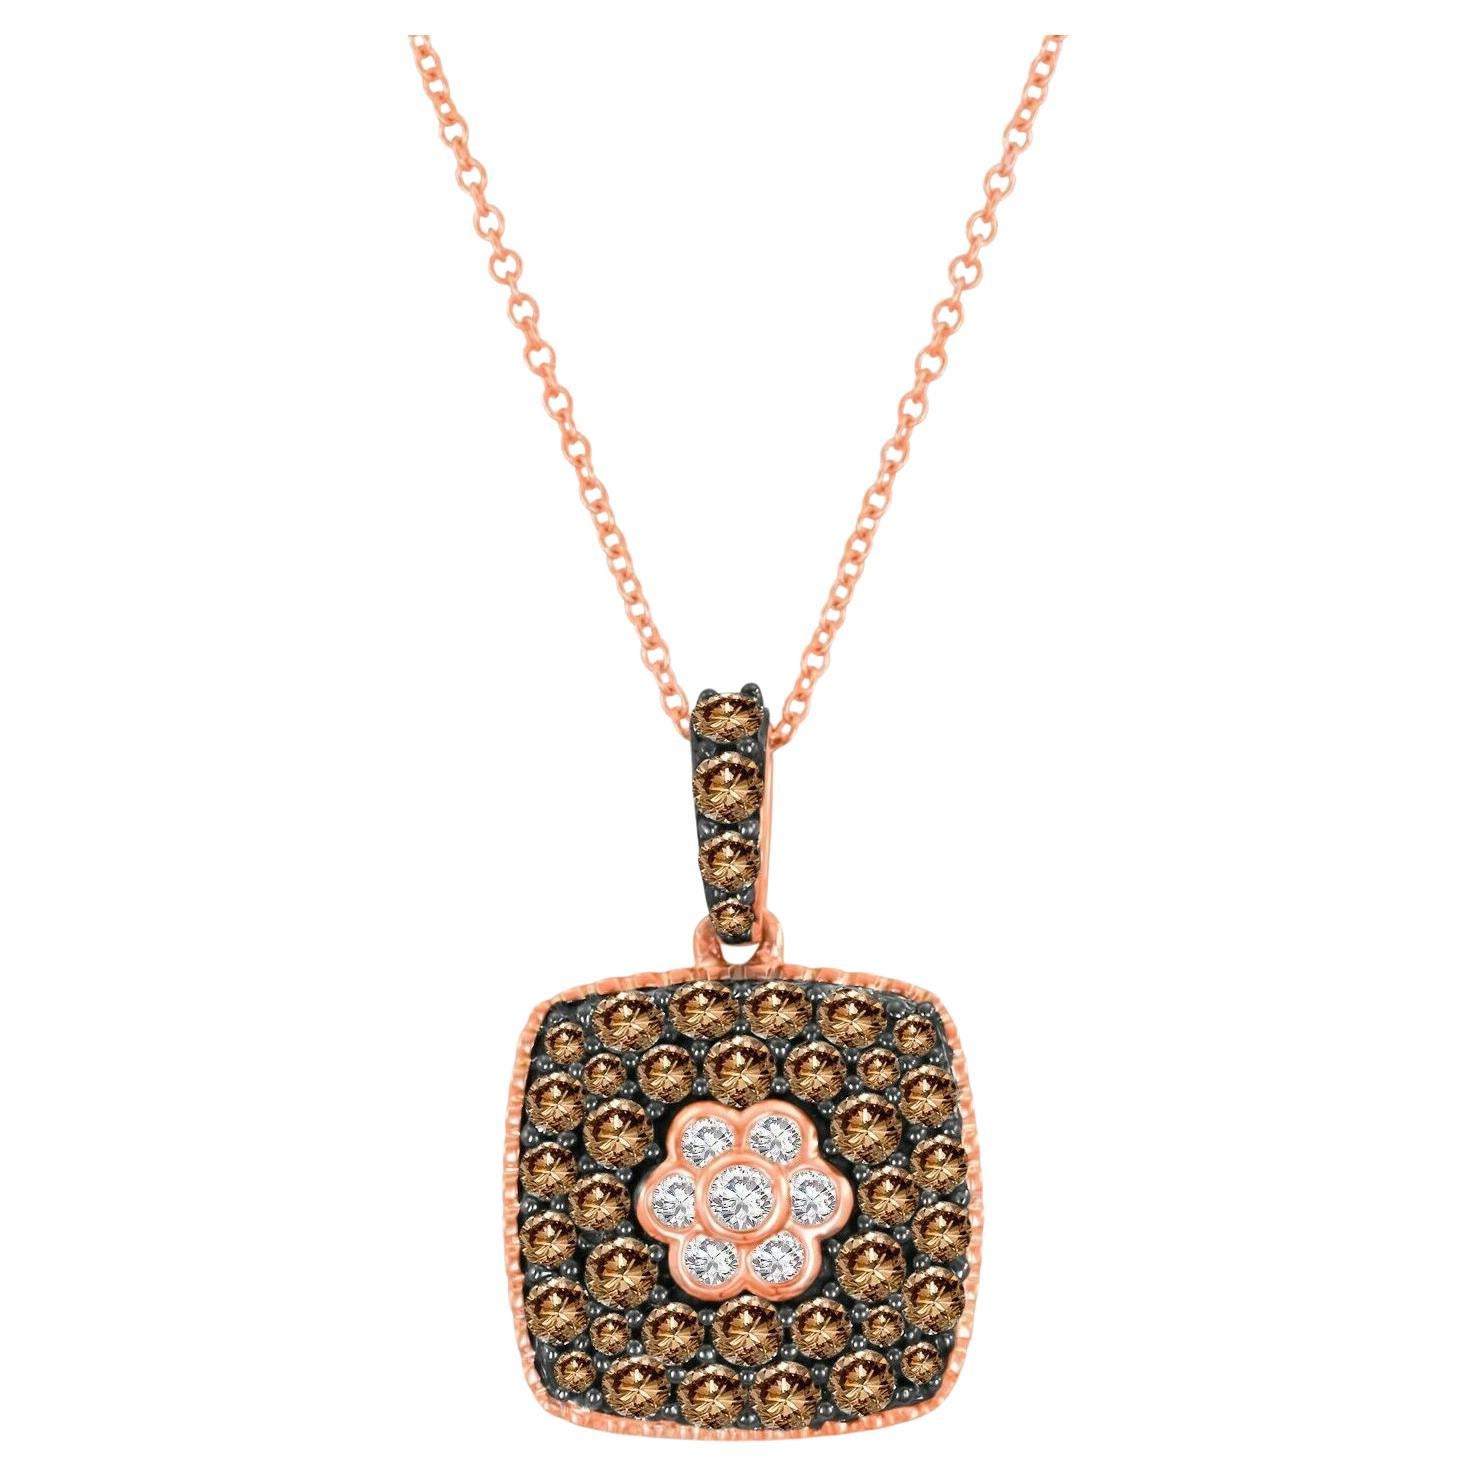 LeVian Magnifique collier pendentif en or rose 14 carats avec diamants ronds brun chocolat